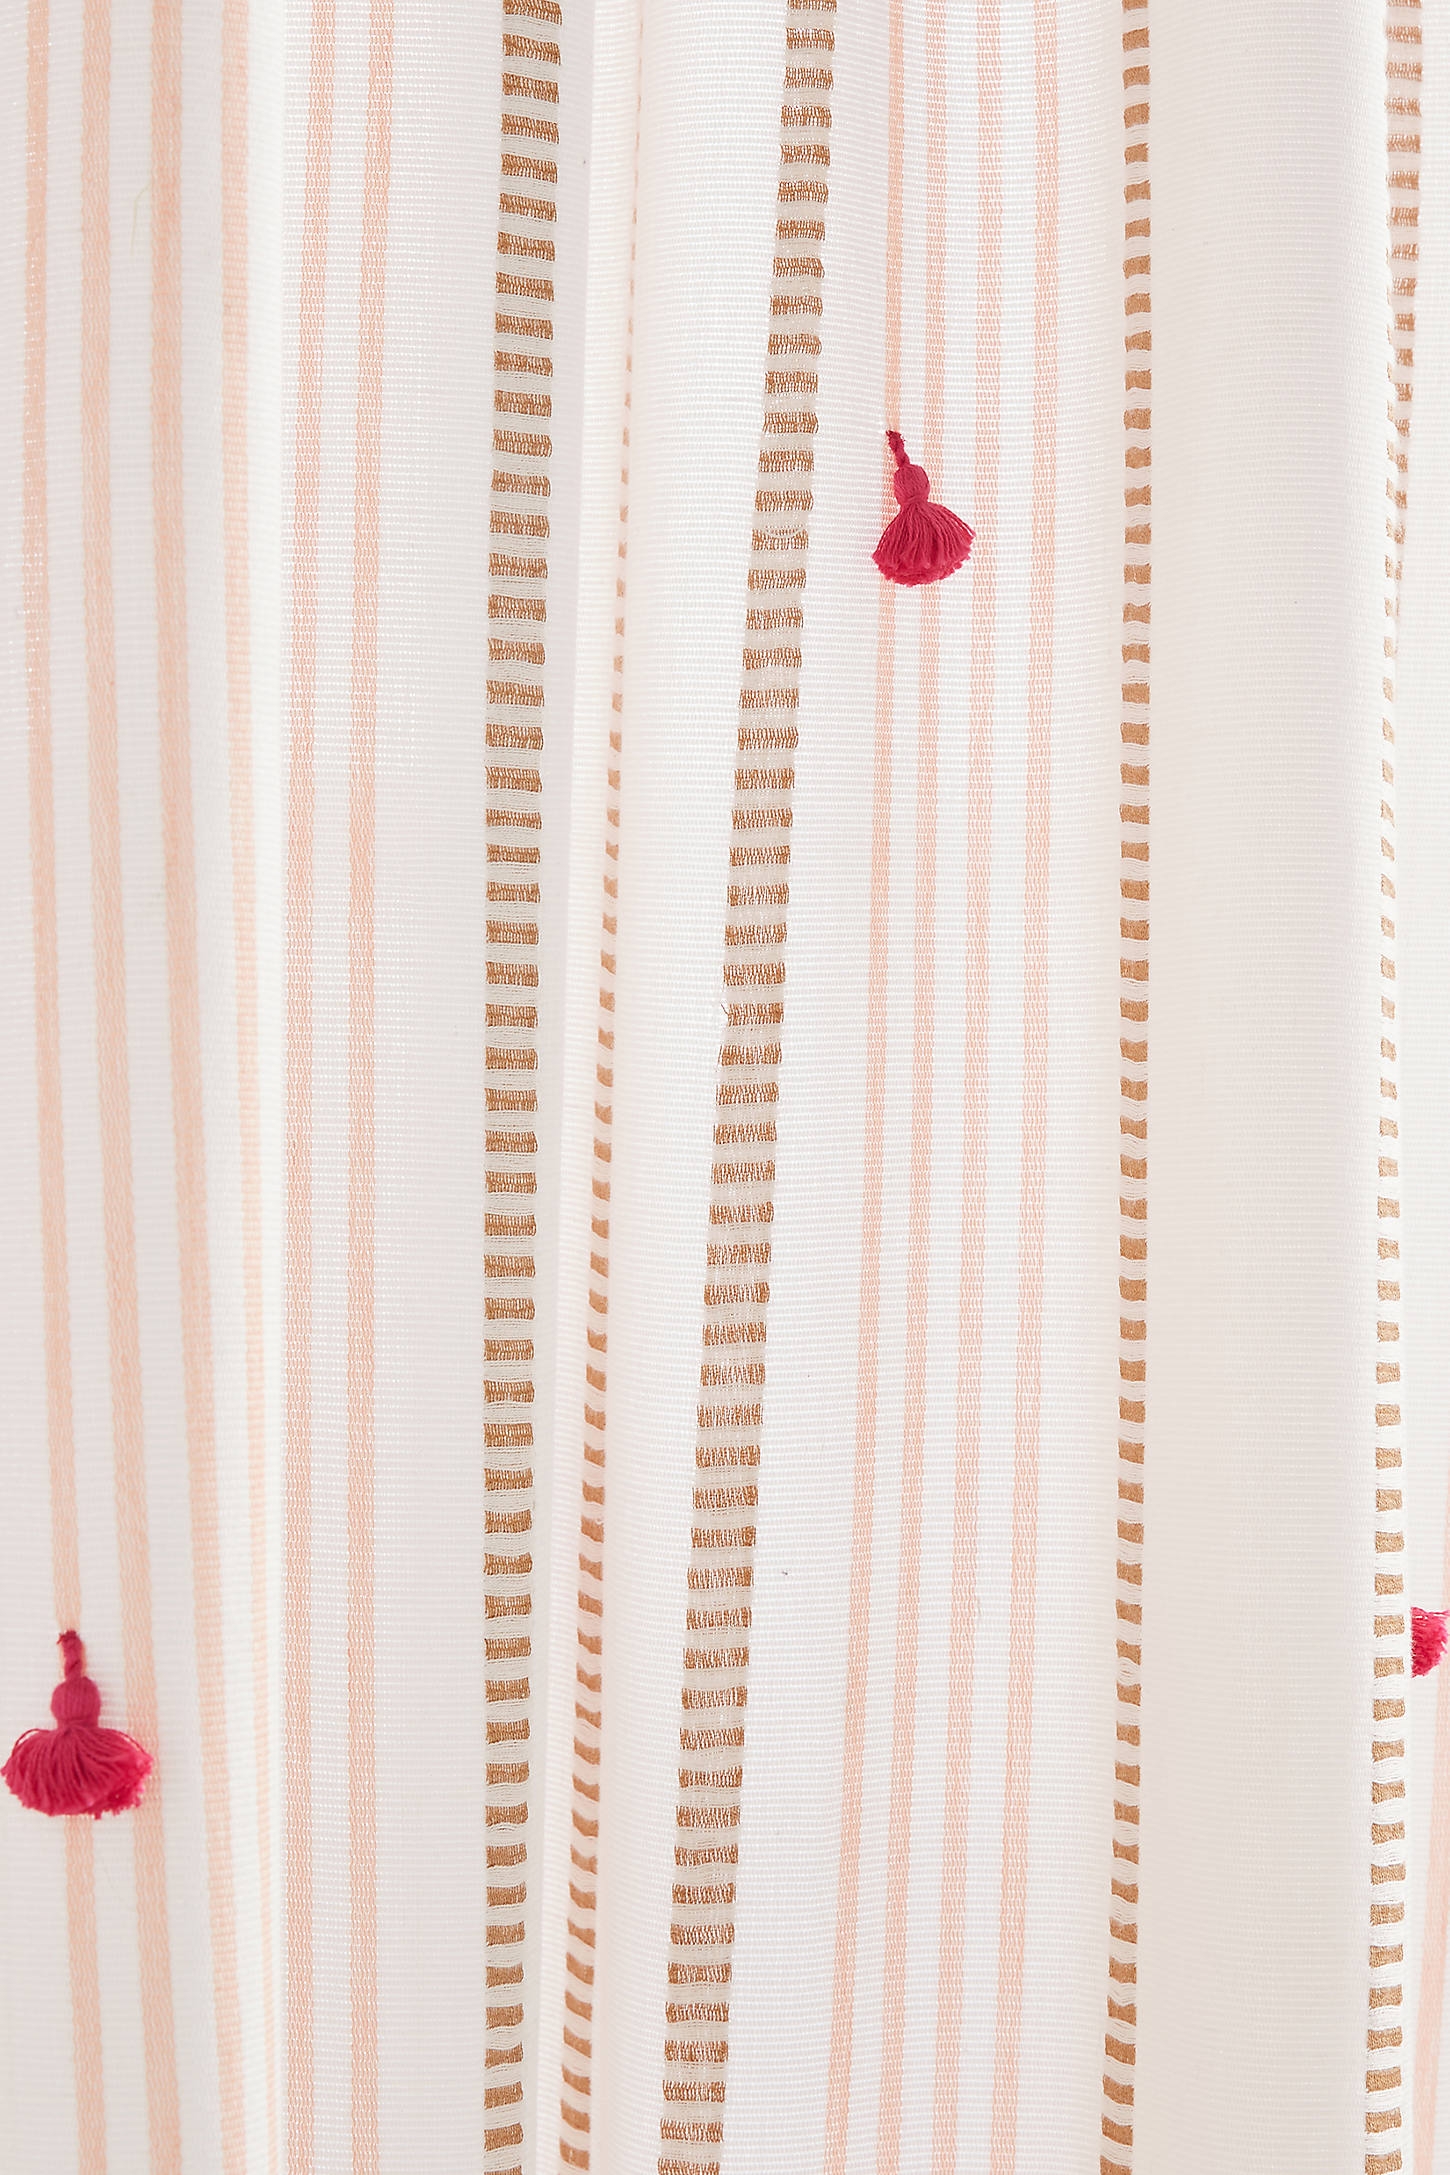 Tasseled Nara Curtain- 96" X 50" - Image 0